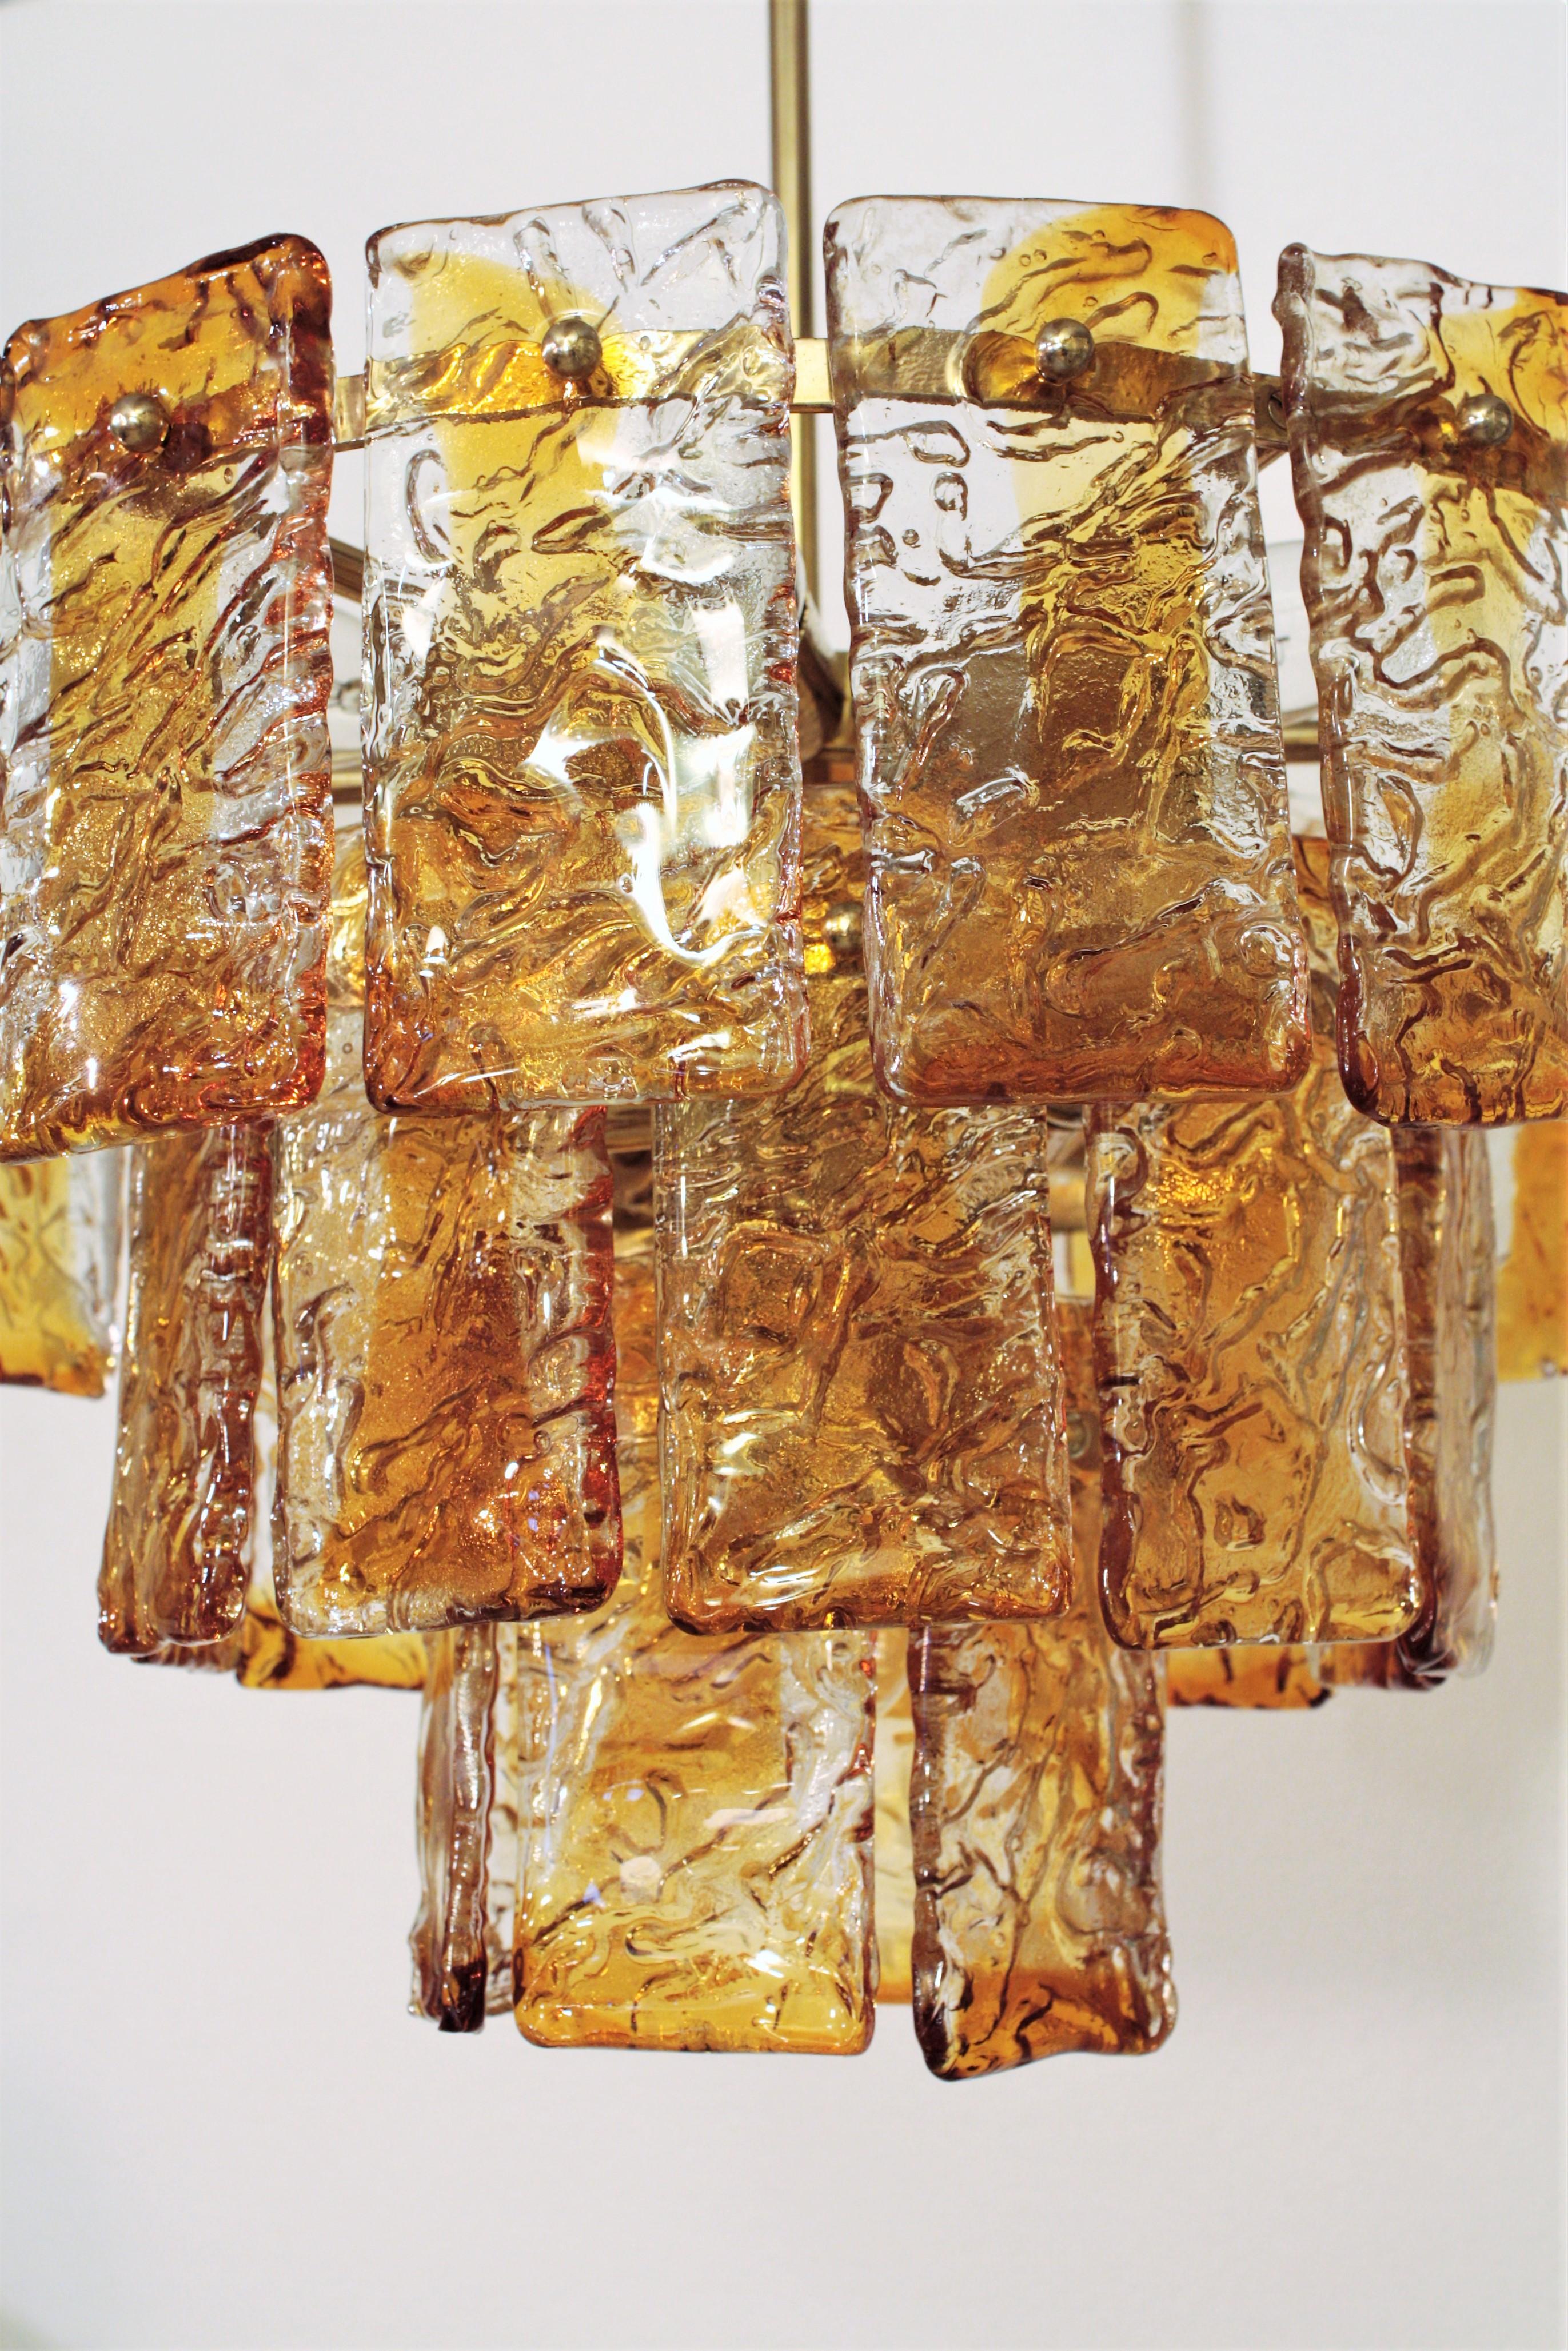 Lustre Cascade, verre de Murano Mazzega, Italie, années 1960
Lustre / pendentif italien moderne du milieu du siècle, soufflé à la main, de couleur ambre et transparent, fabriqué à Murano par Mazzega. 
Ce lustre à trois niveaux en verre Mazzega est